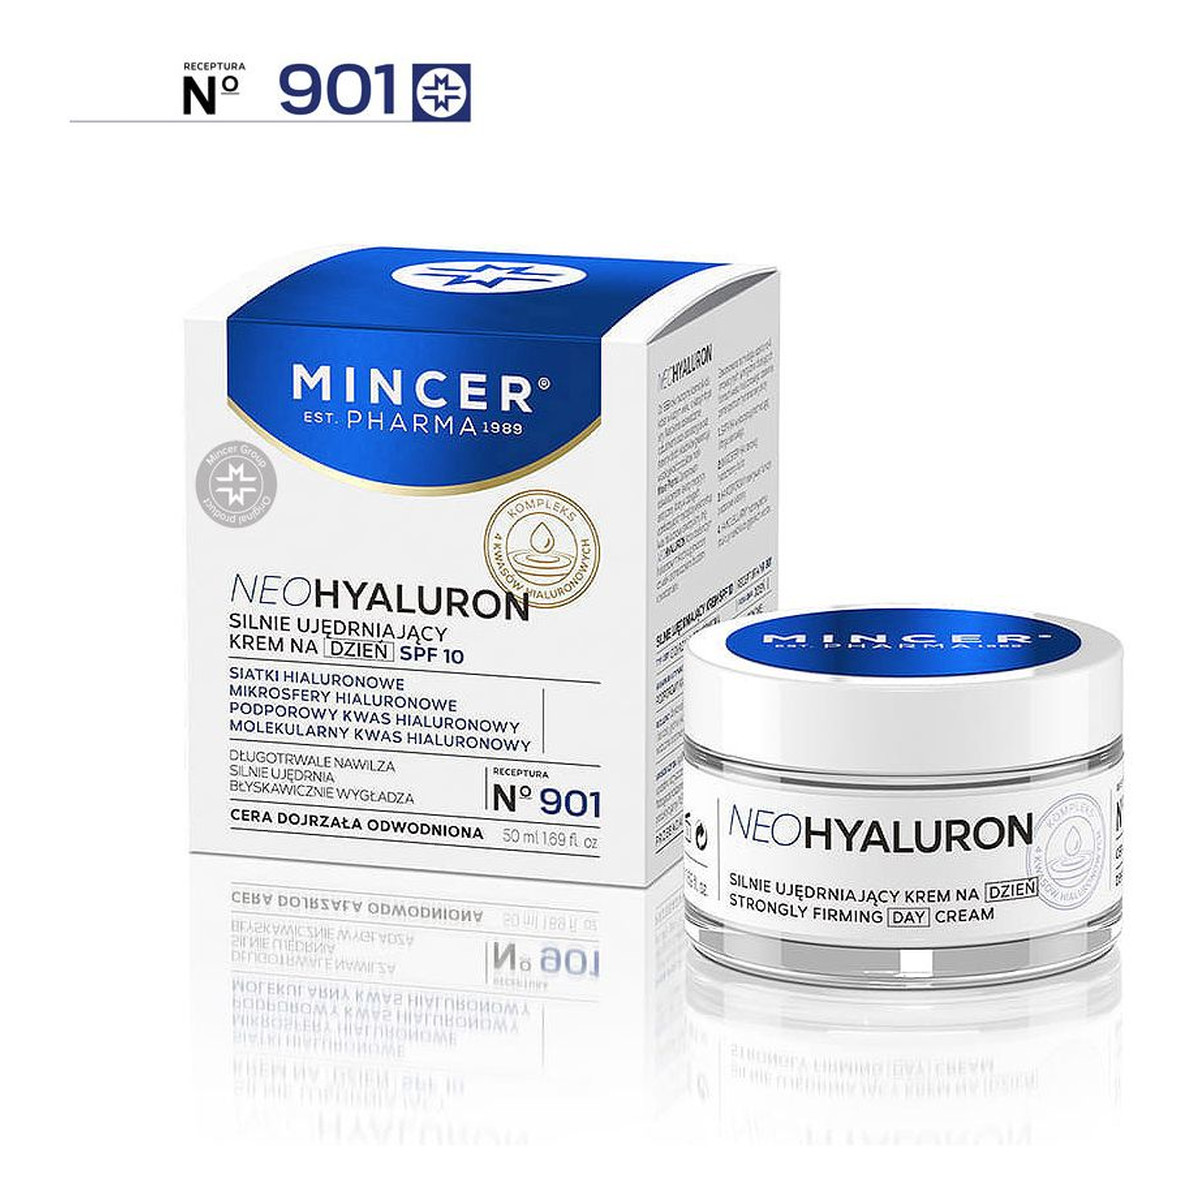 Mincer Pharma Neo Hyaluron krem na dzień do twarzy No901 50ml